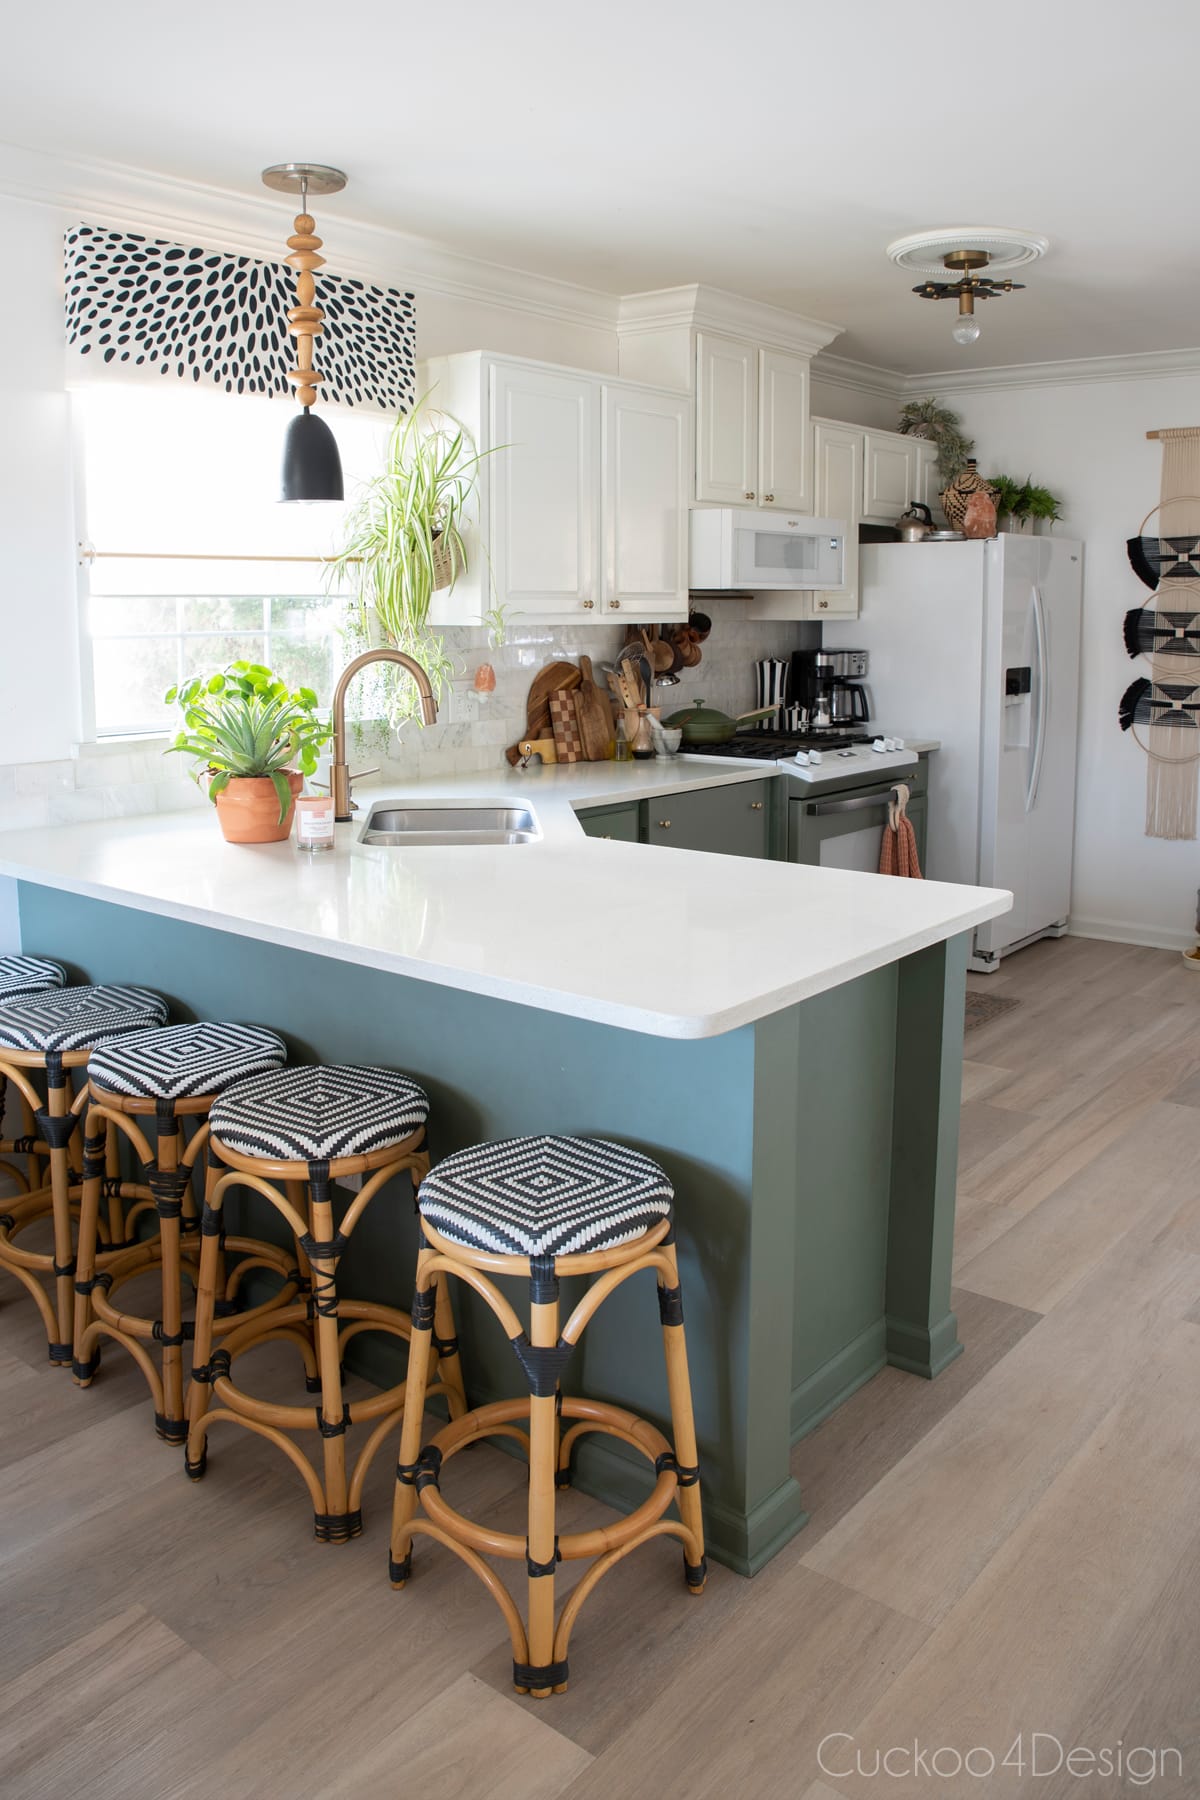 Valspar Lush Sage kitchen cabinets and Texas White Ash Karndean vinyl plank flooring